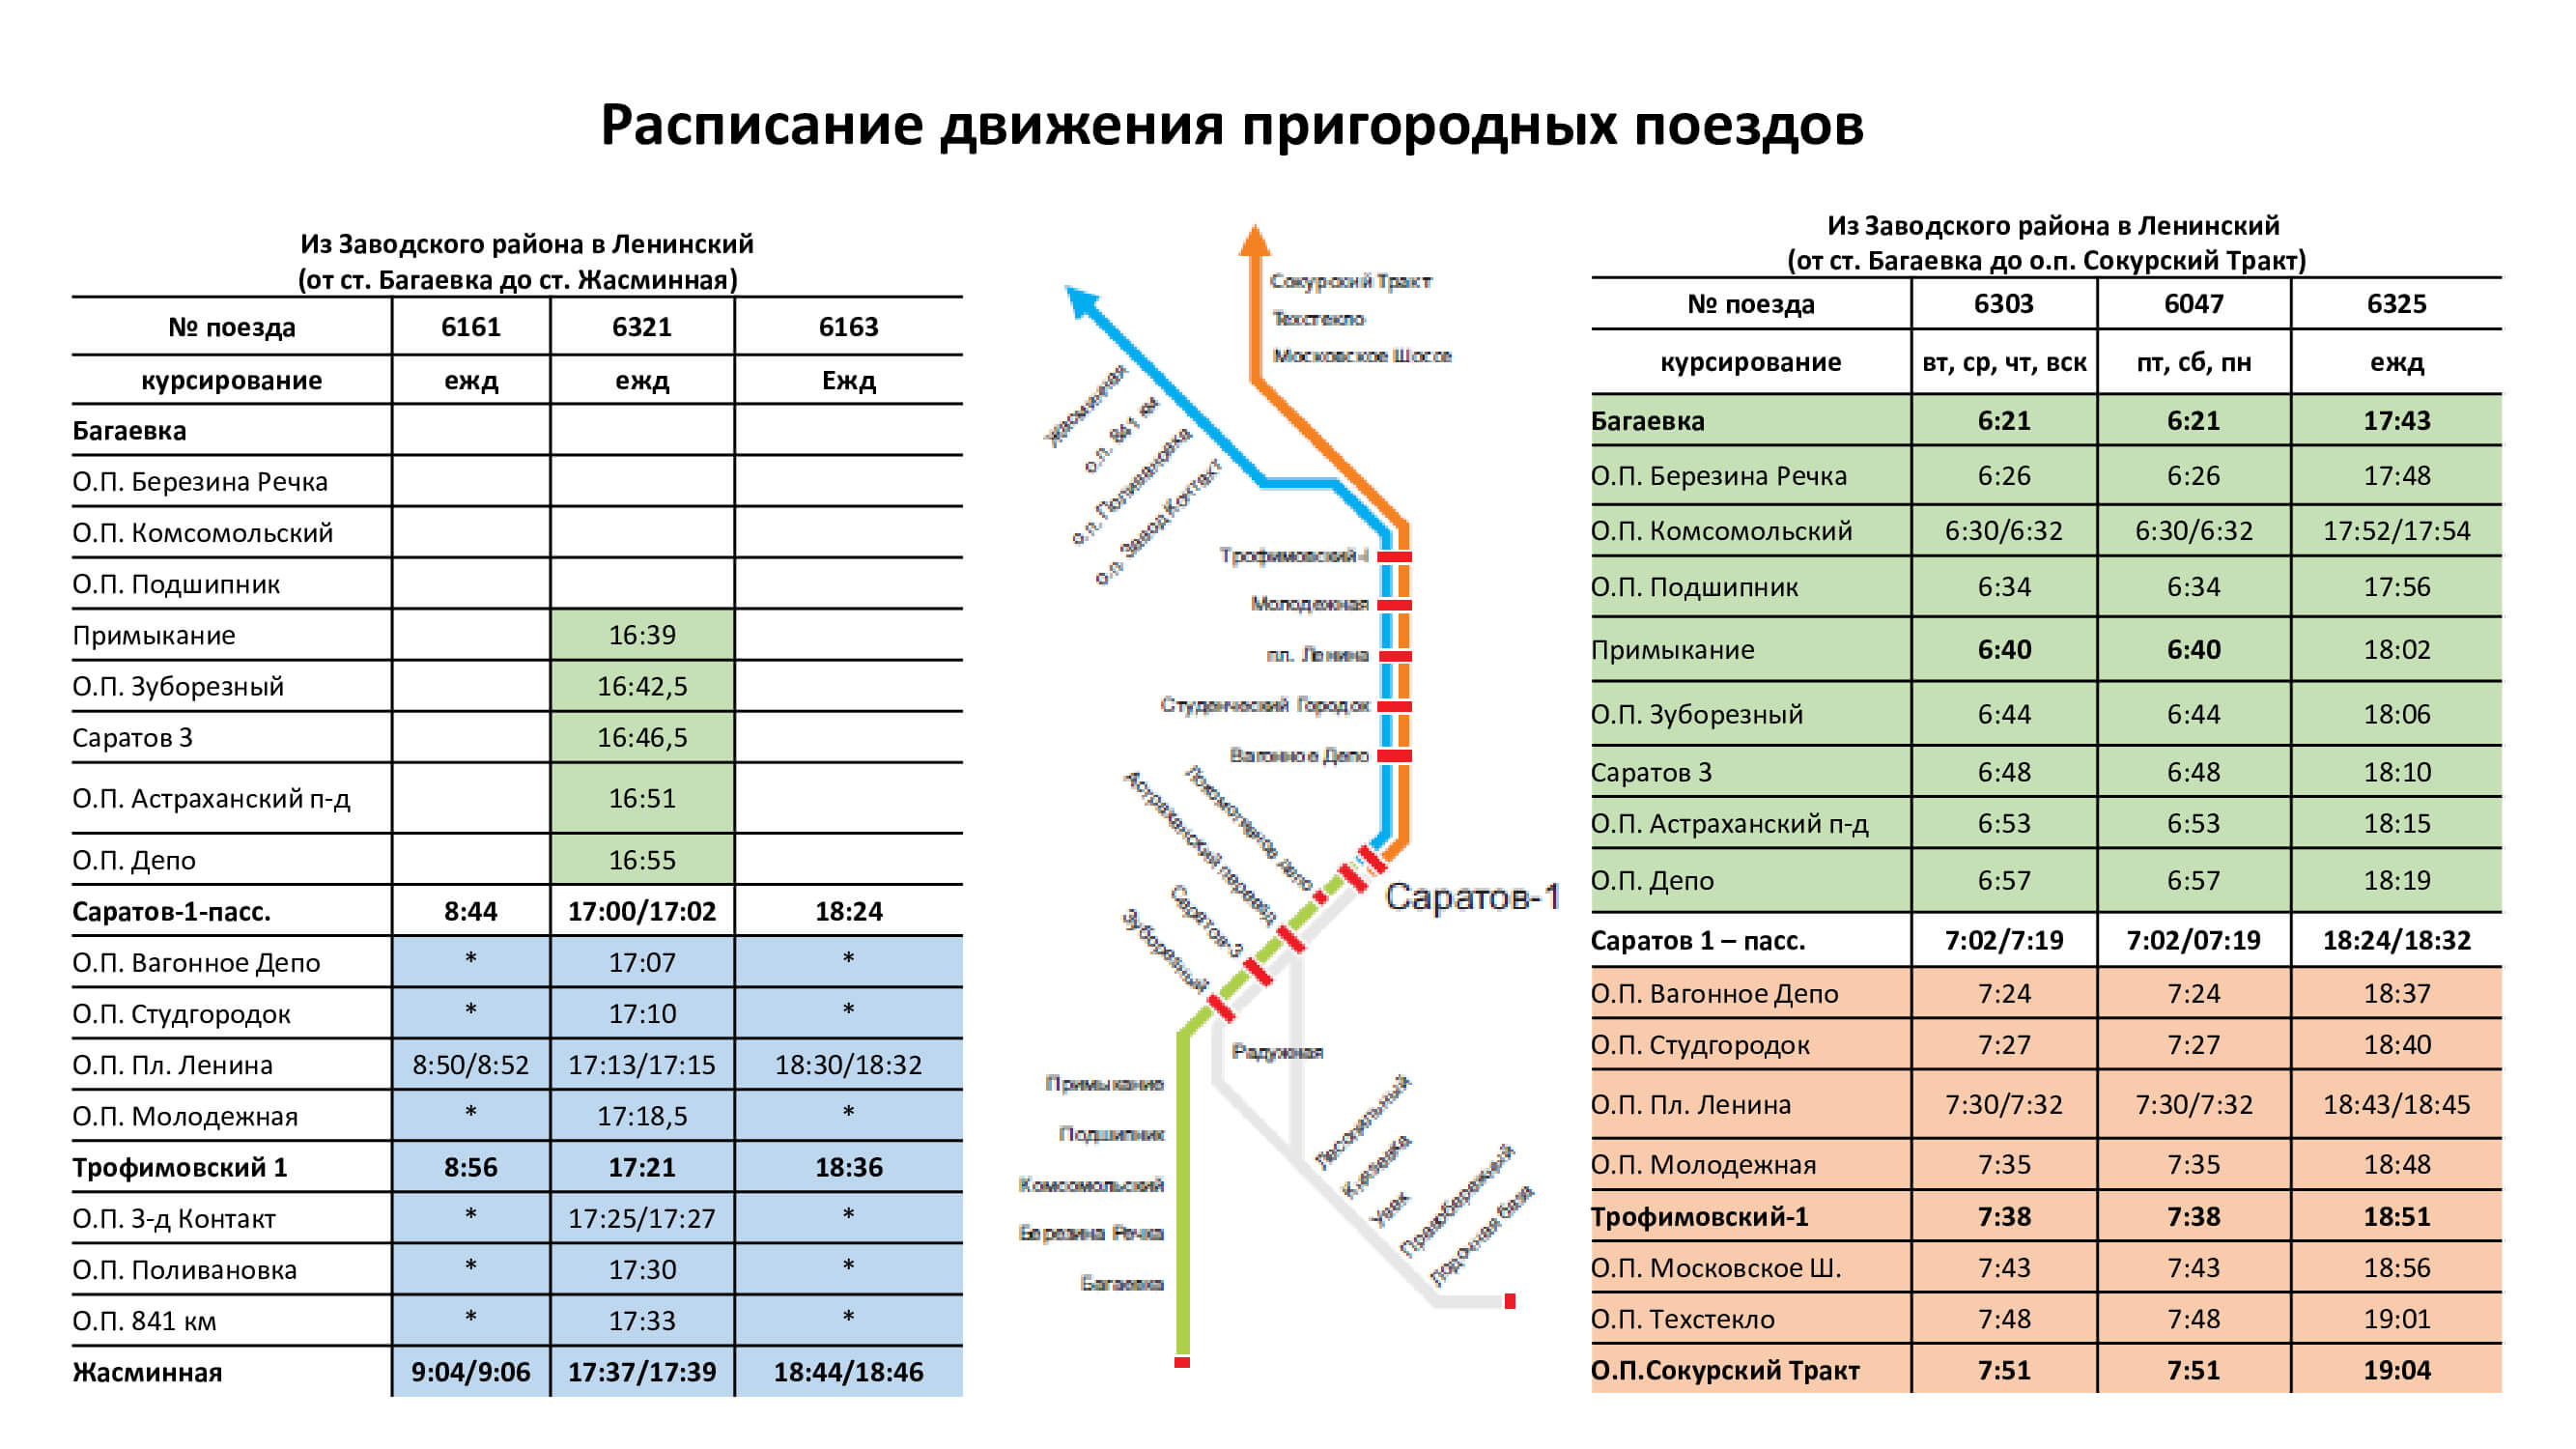 gorodskaja cherta 4. - Расписание движения пригородных поездов в черте города